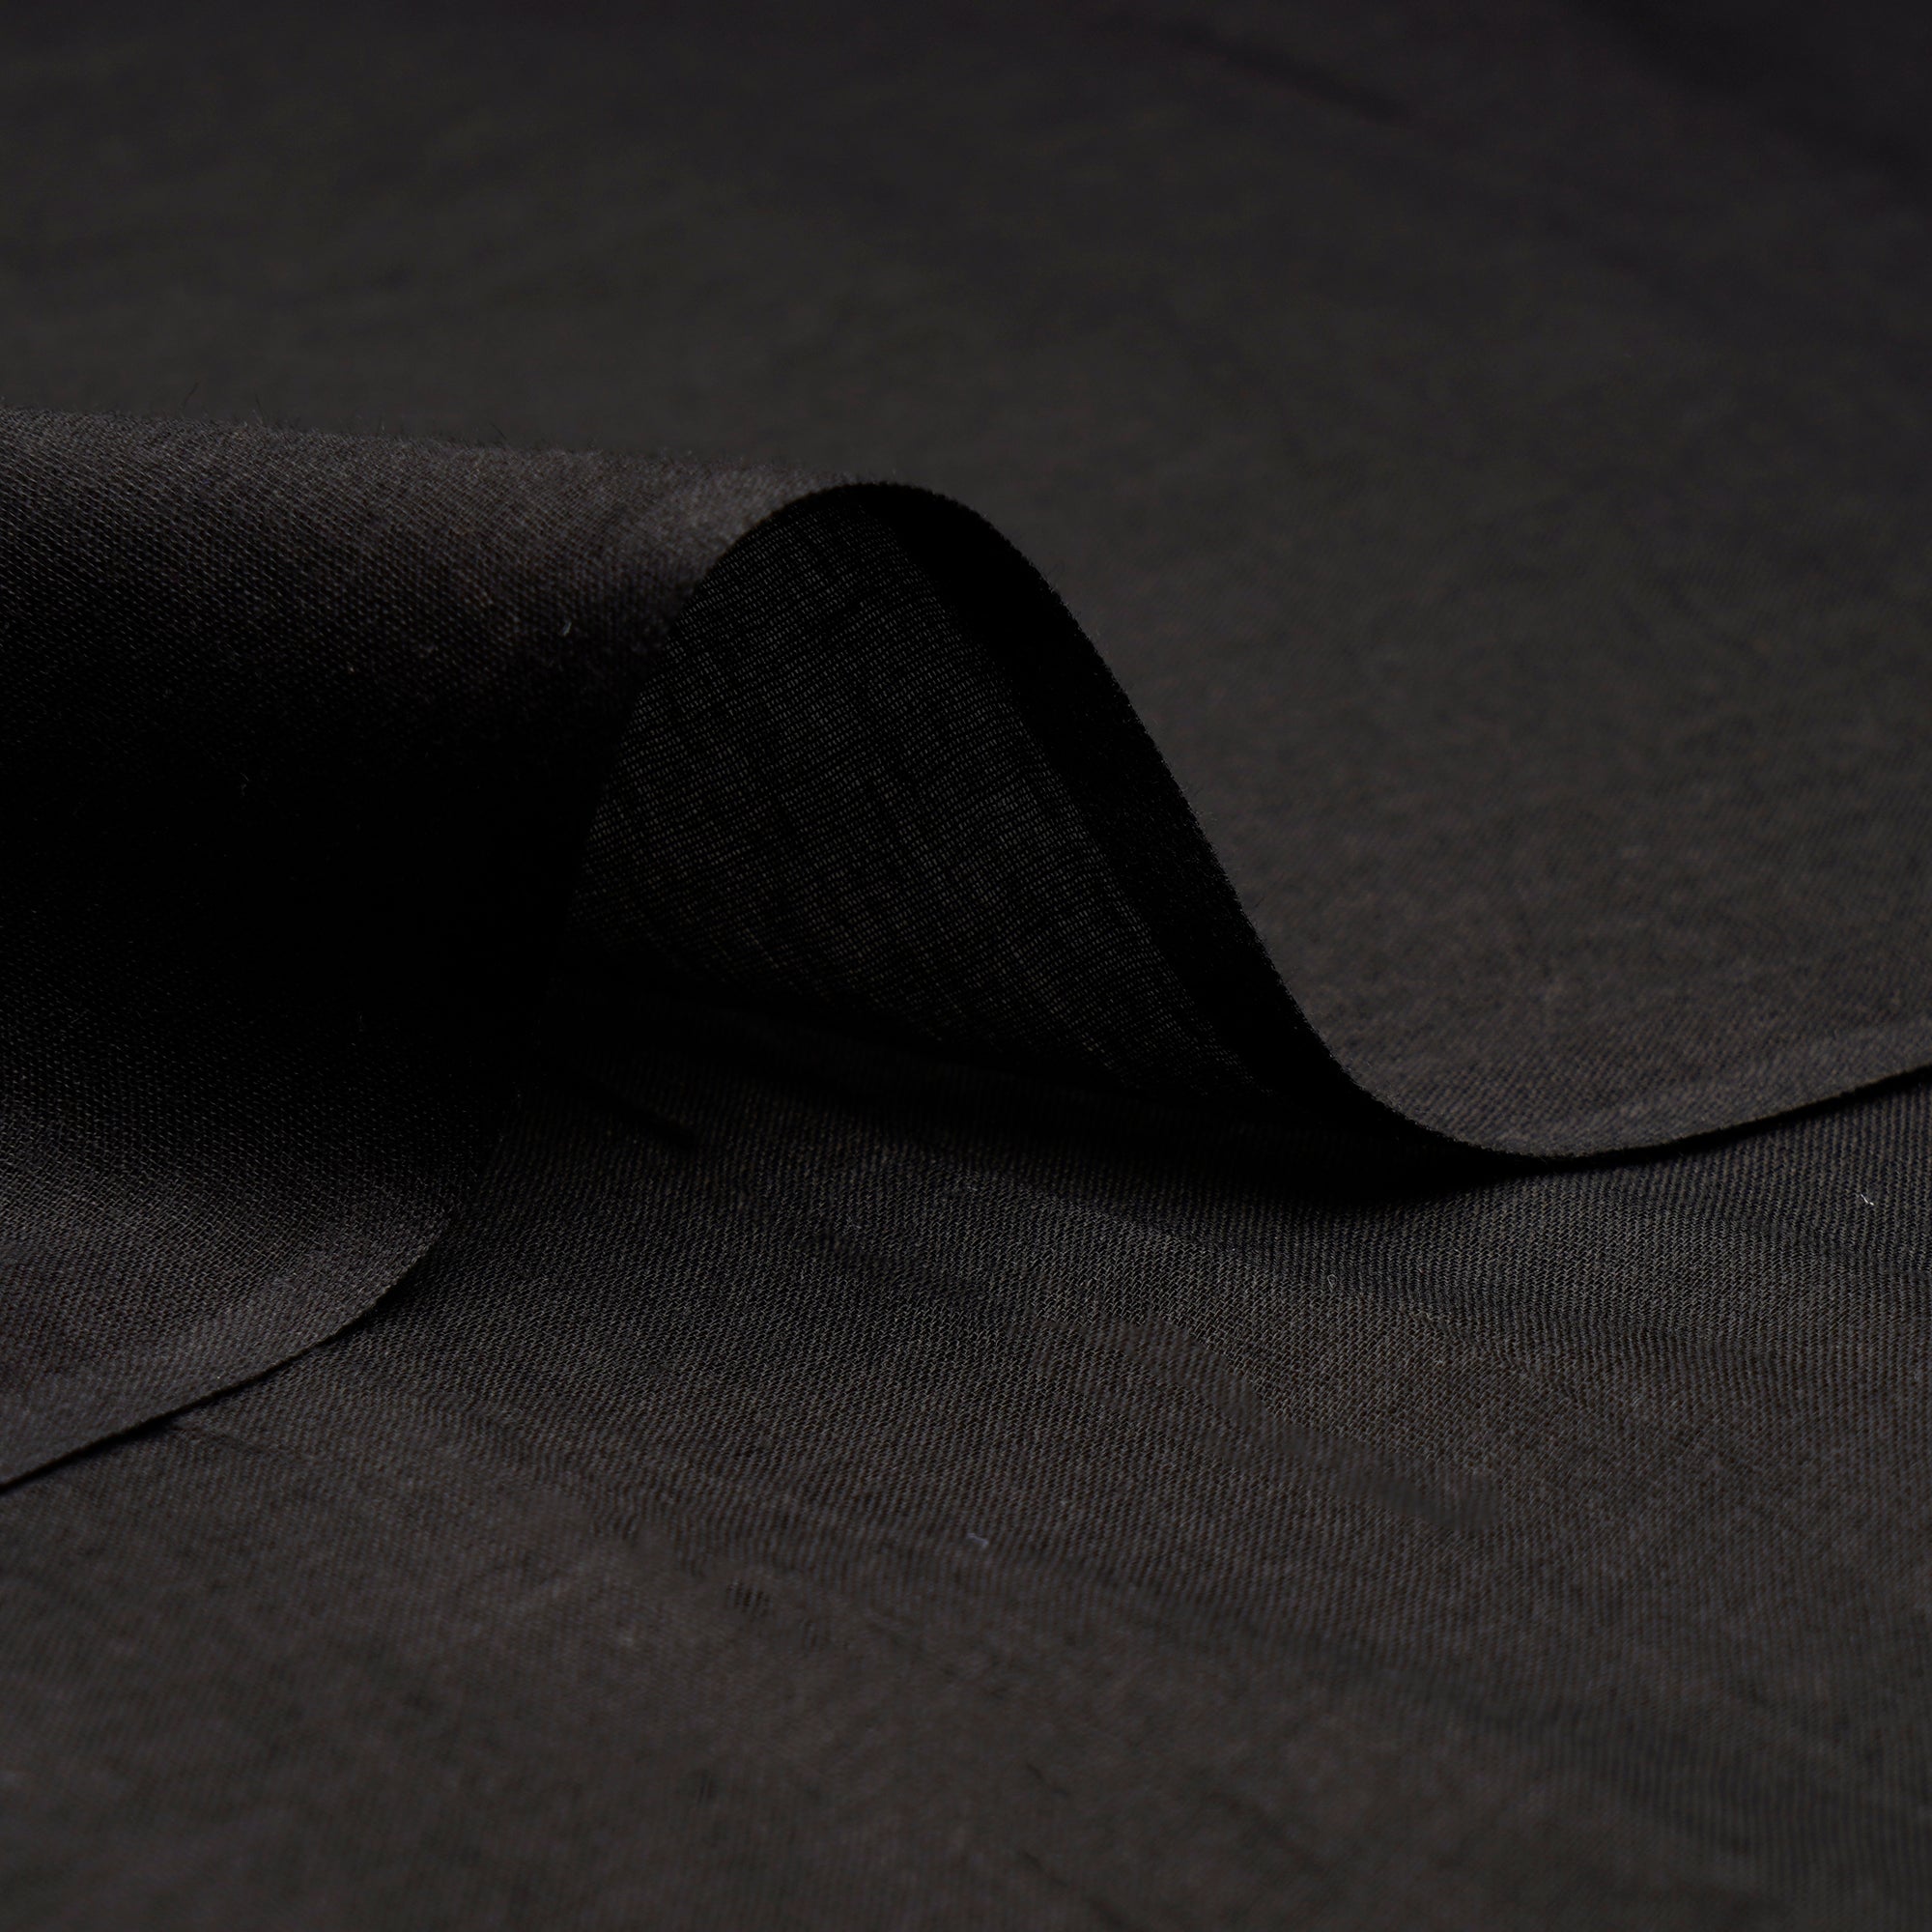 Black Plain Dyed Cotton Voile Fabric